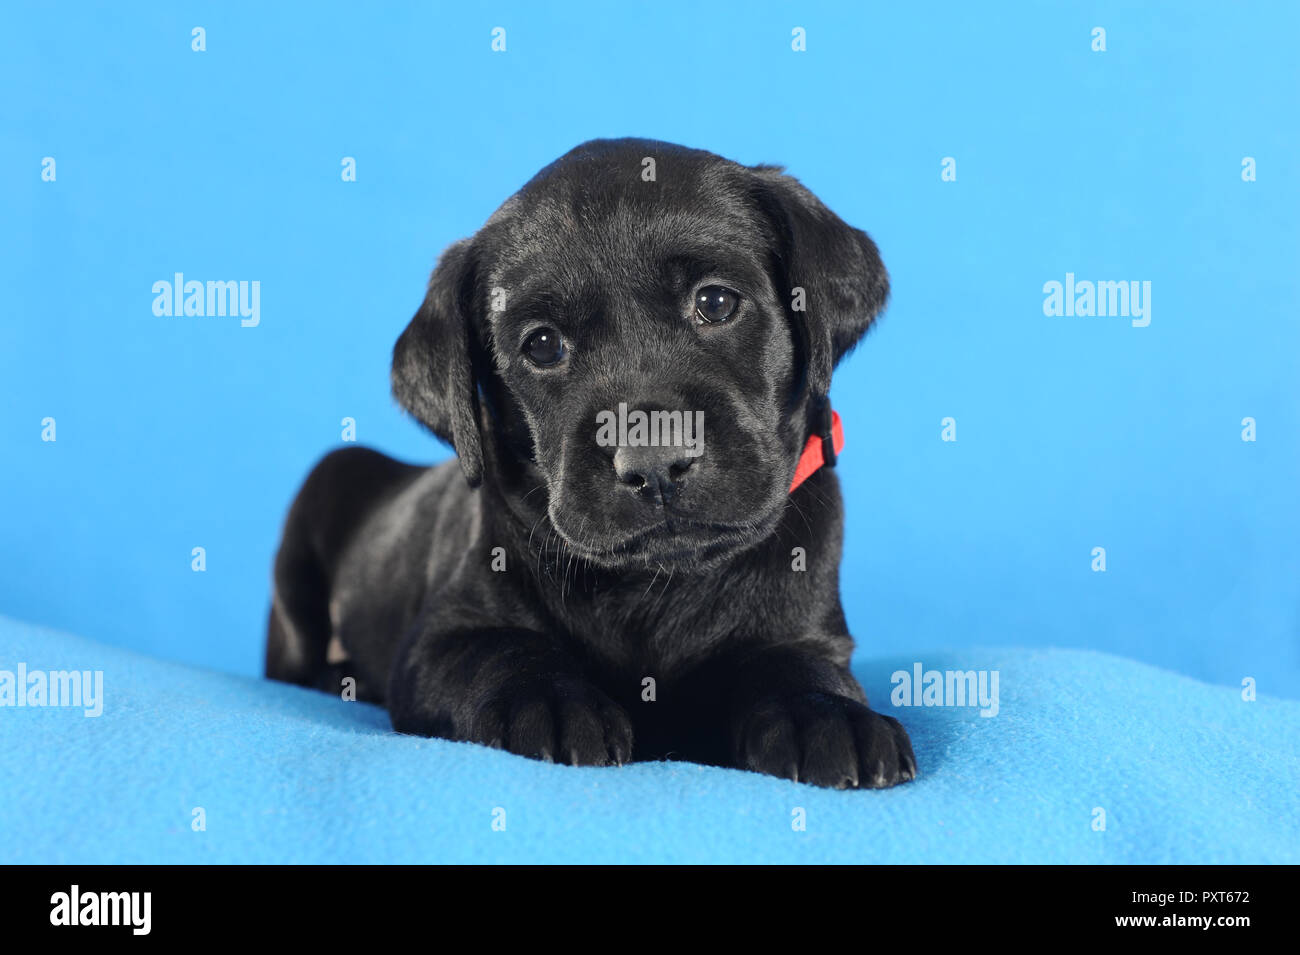 Labrador Retriever noir, chiot 5 semaines, couché sur une couverture bleue, Autriche Banque D'Images